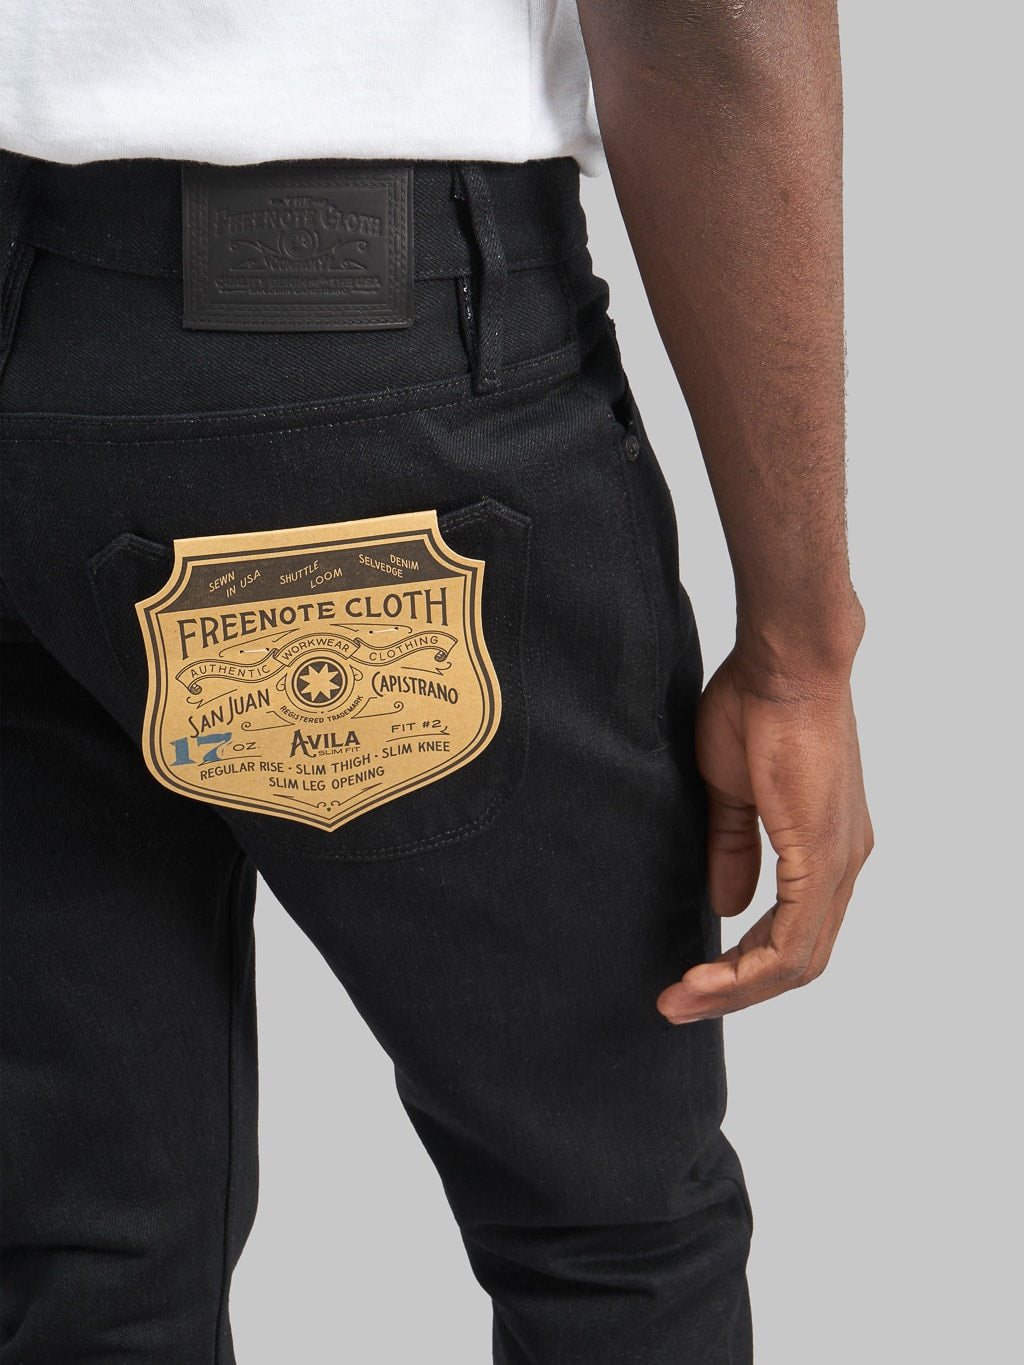 Freenote Cloth Avila 17oz Black Denim Slim Taper Jeans back pocket